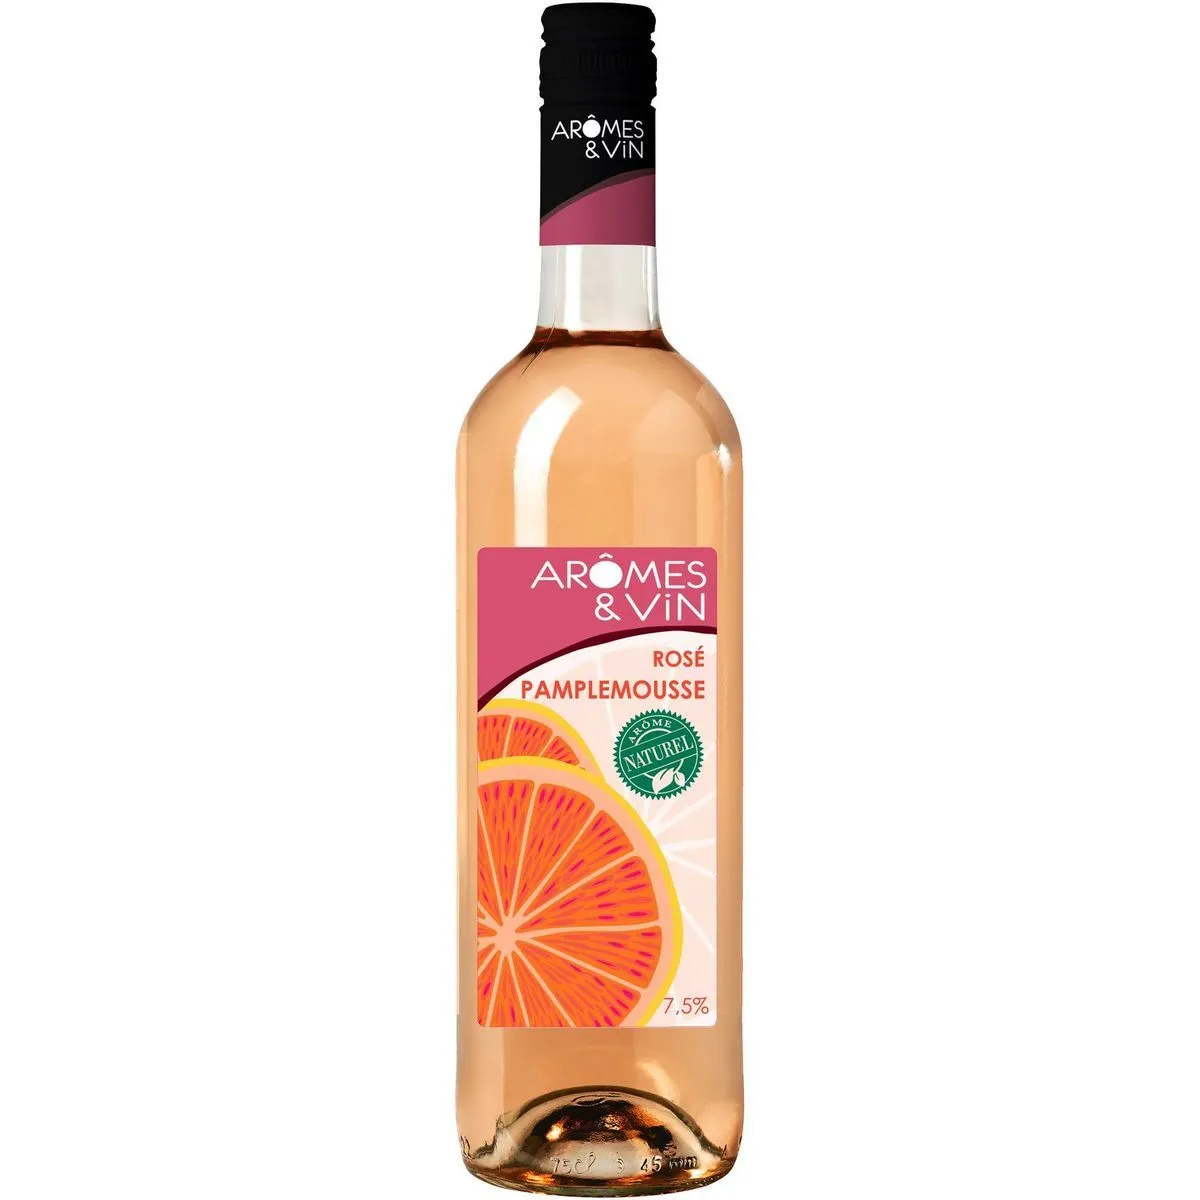 boisson aromatisée à base de vin arômes et vins